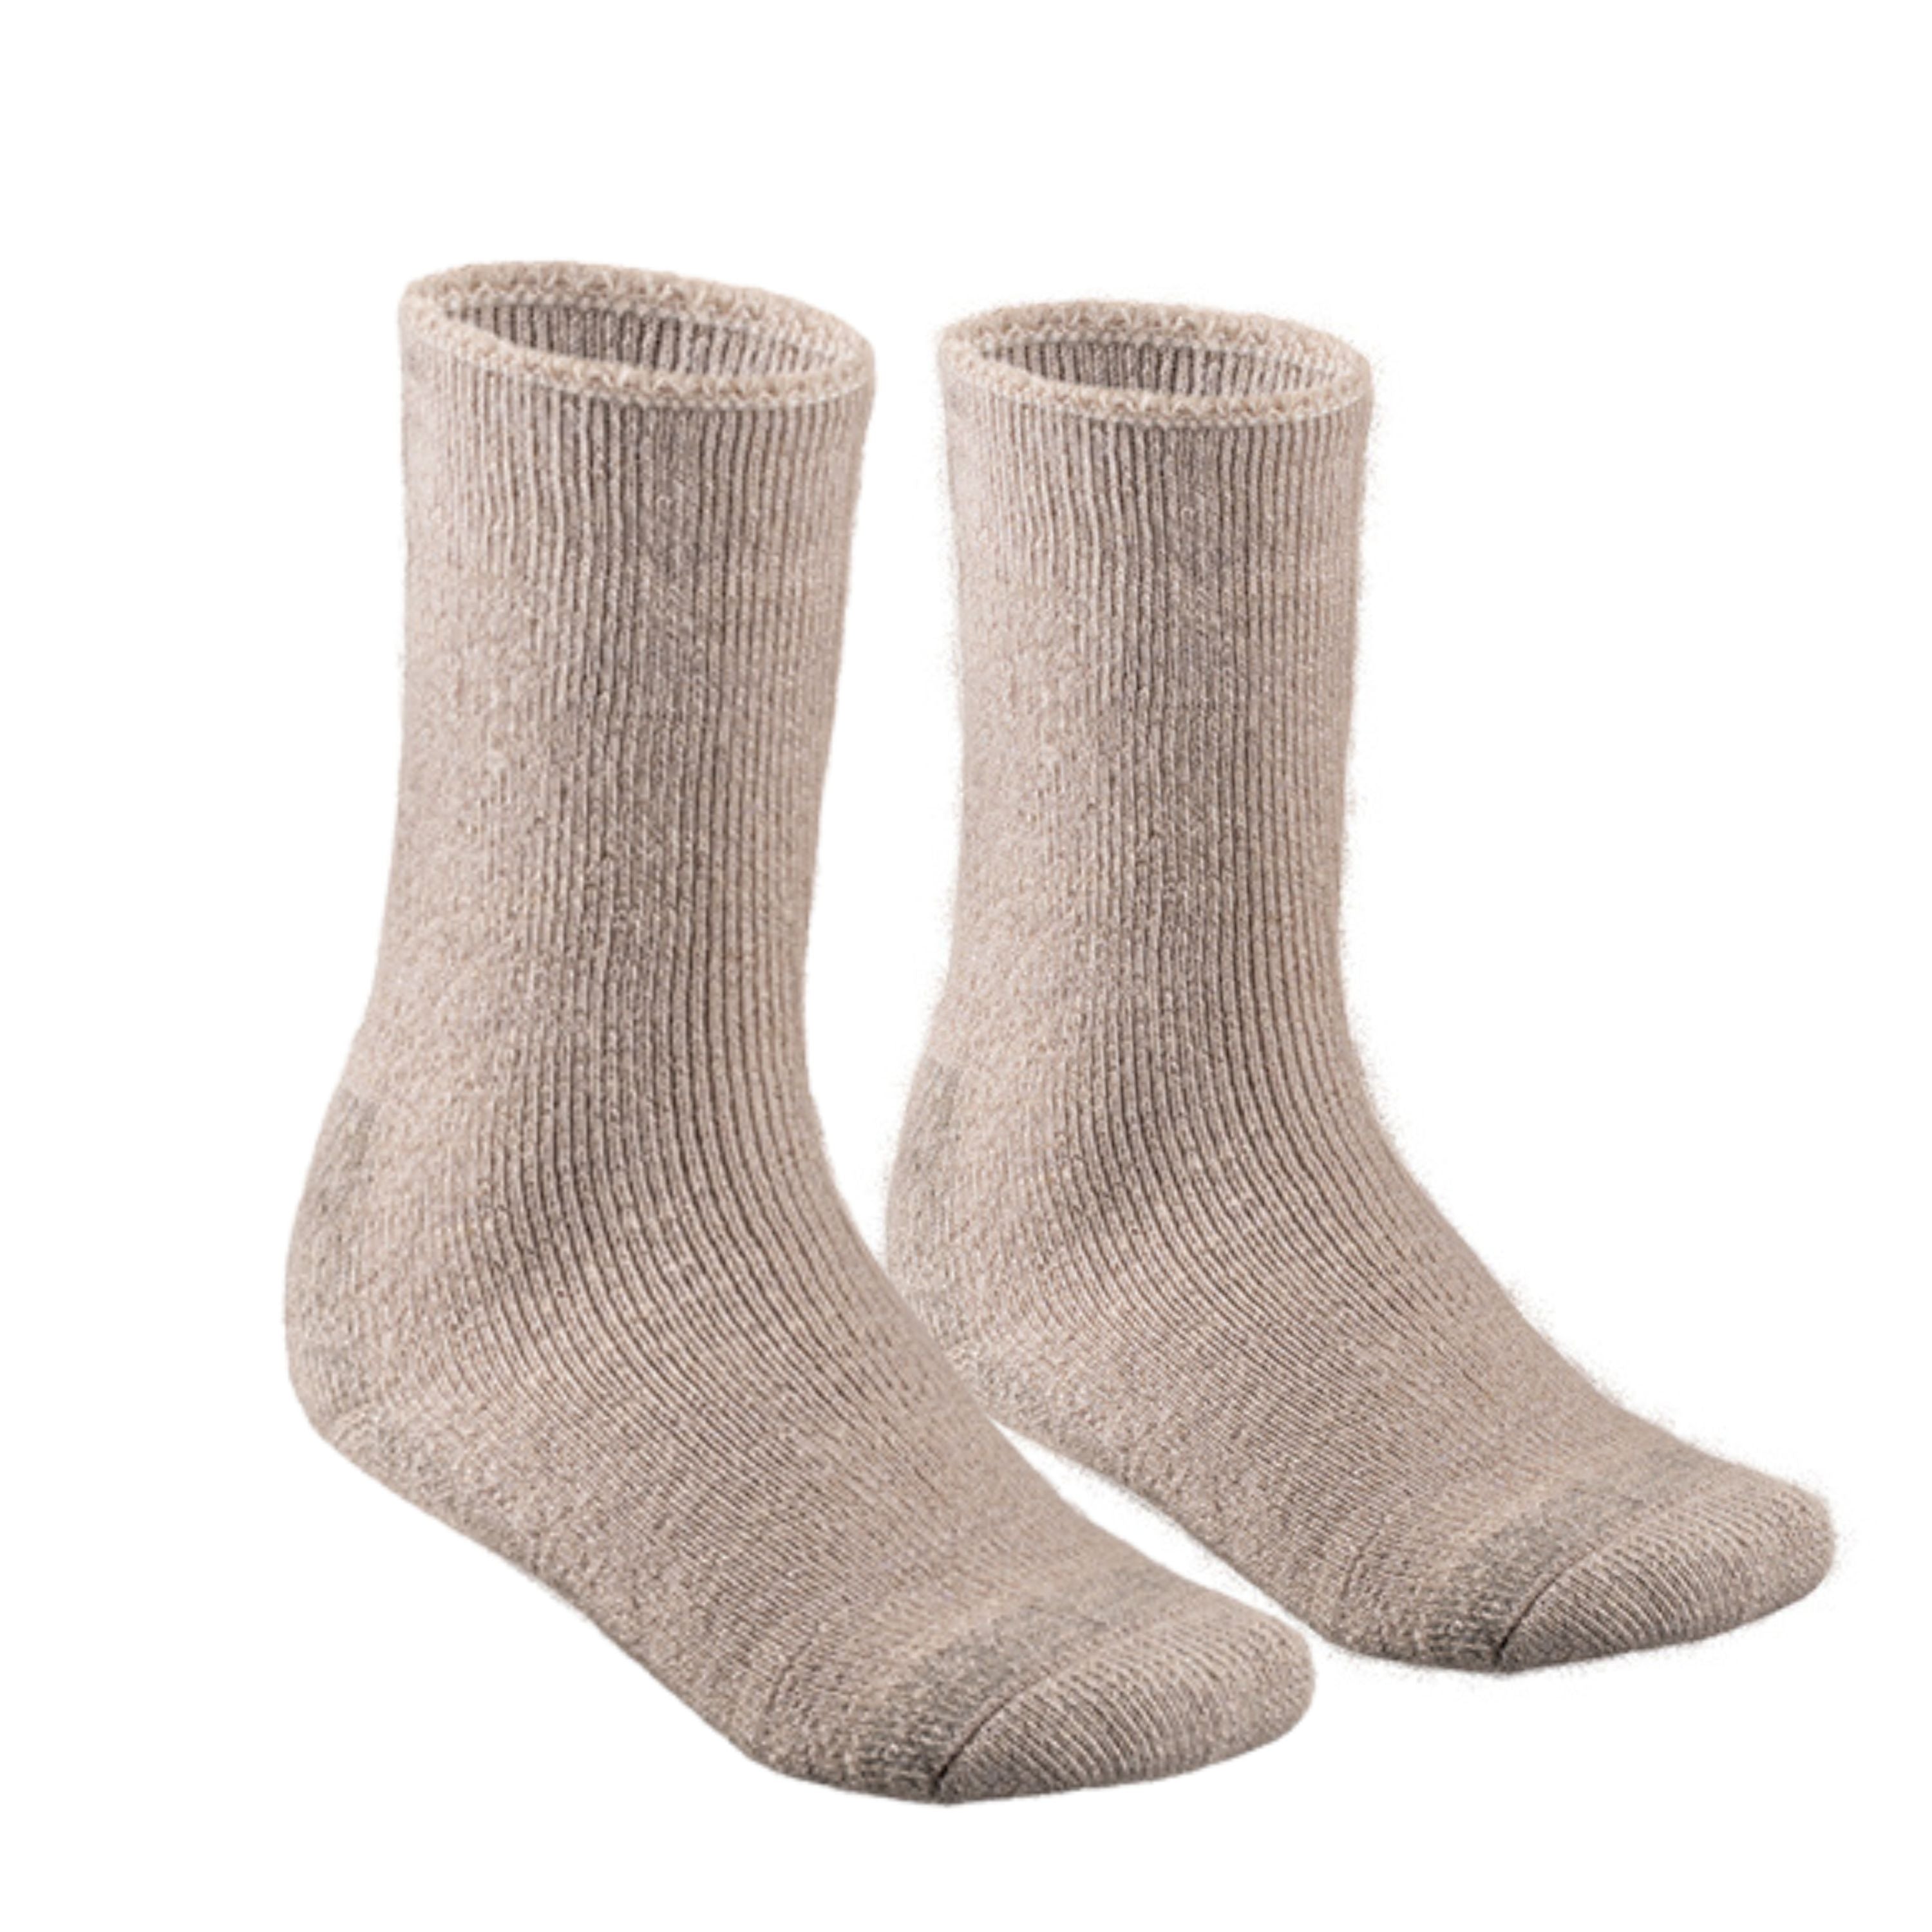 "Everest" Mohair socks - Unisex